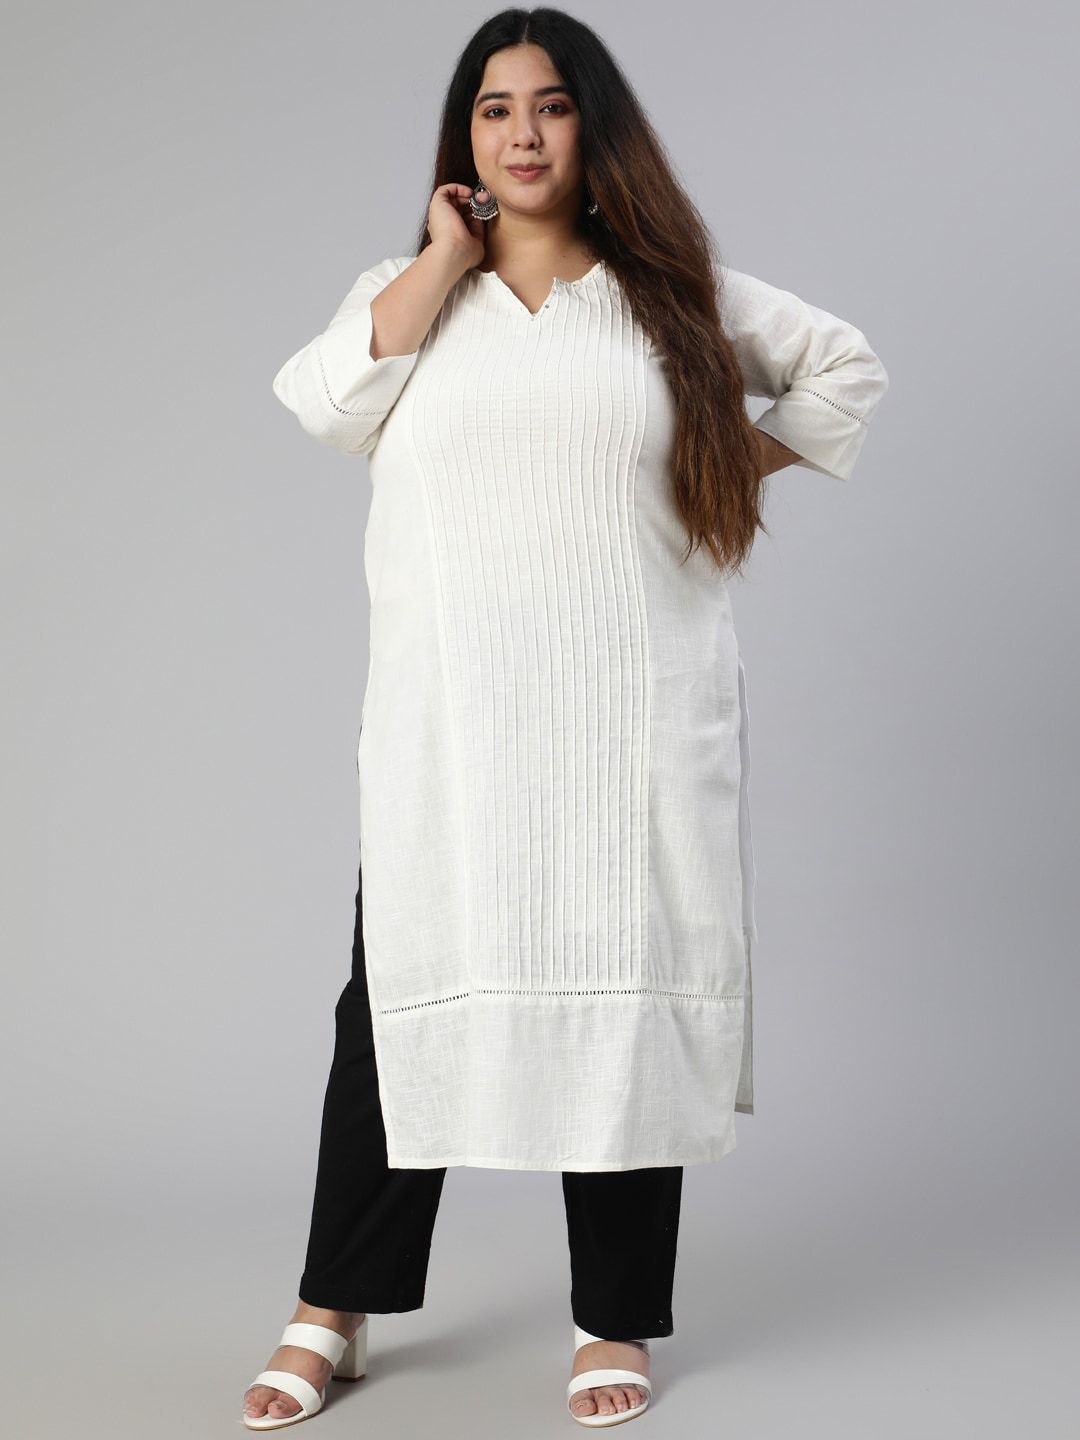 Jaipur Kurti Plus Size Women White Pure Cotton Kurta with Trousers Price in India